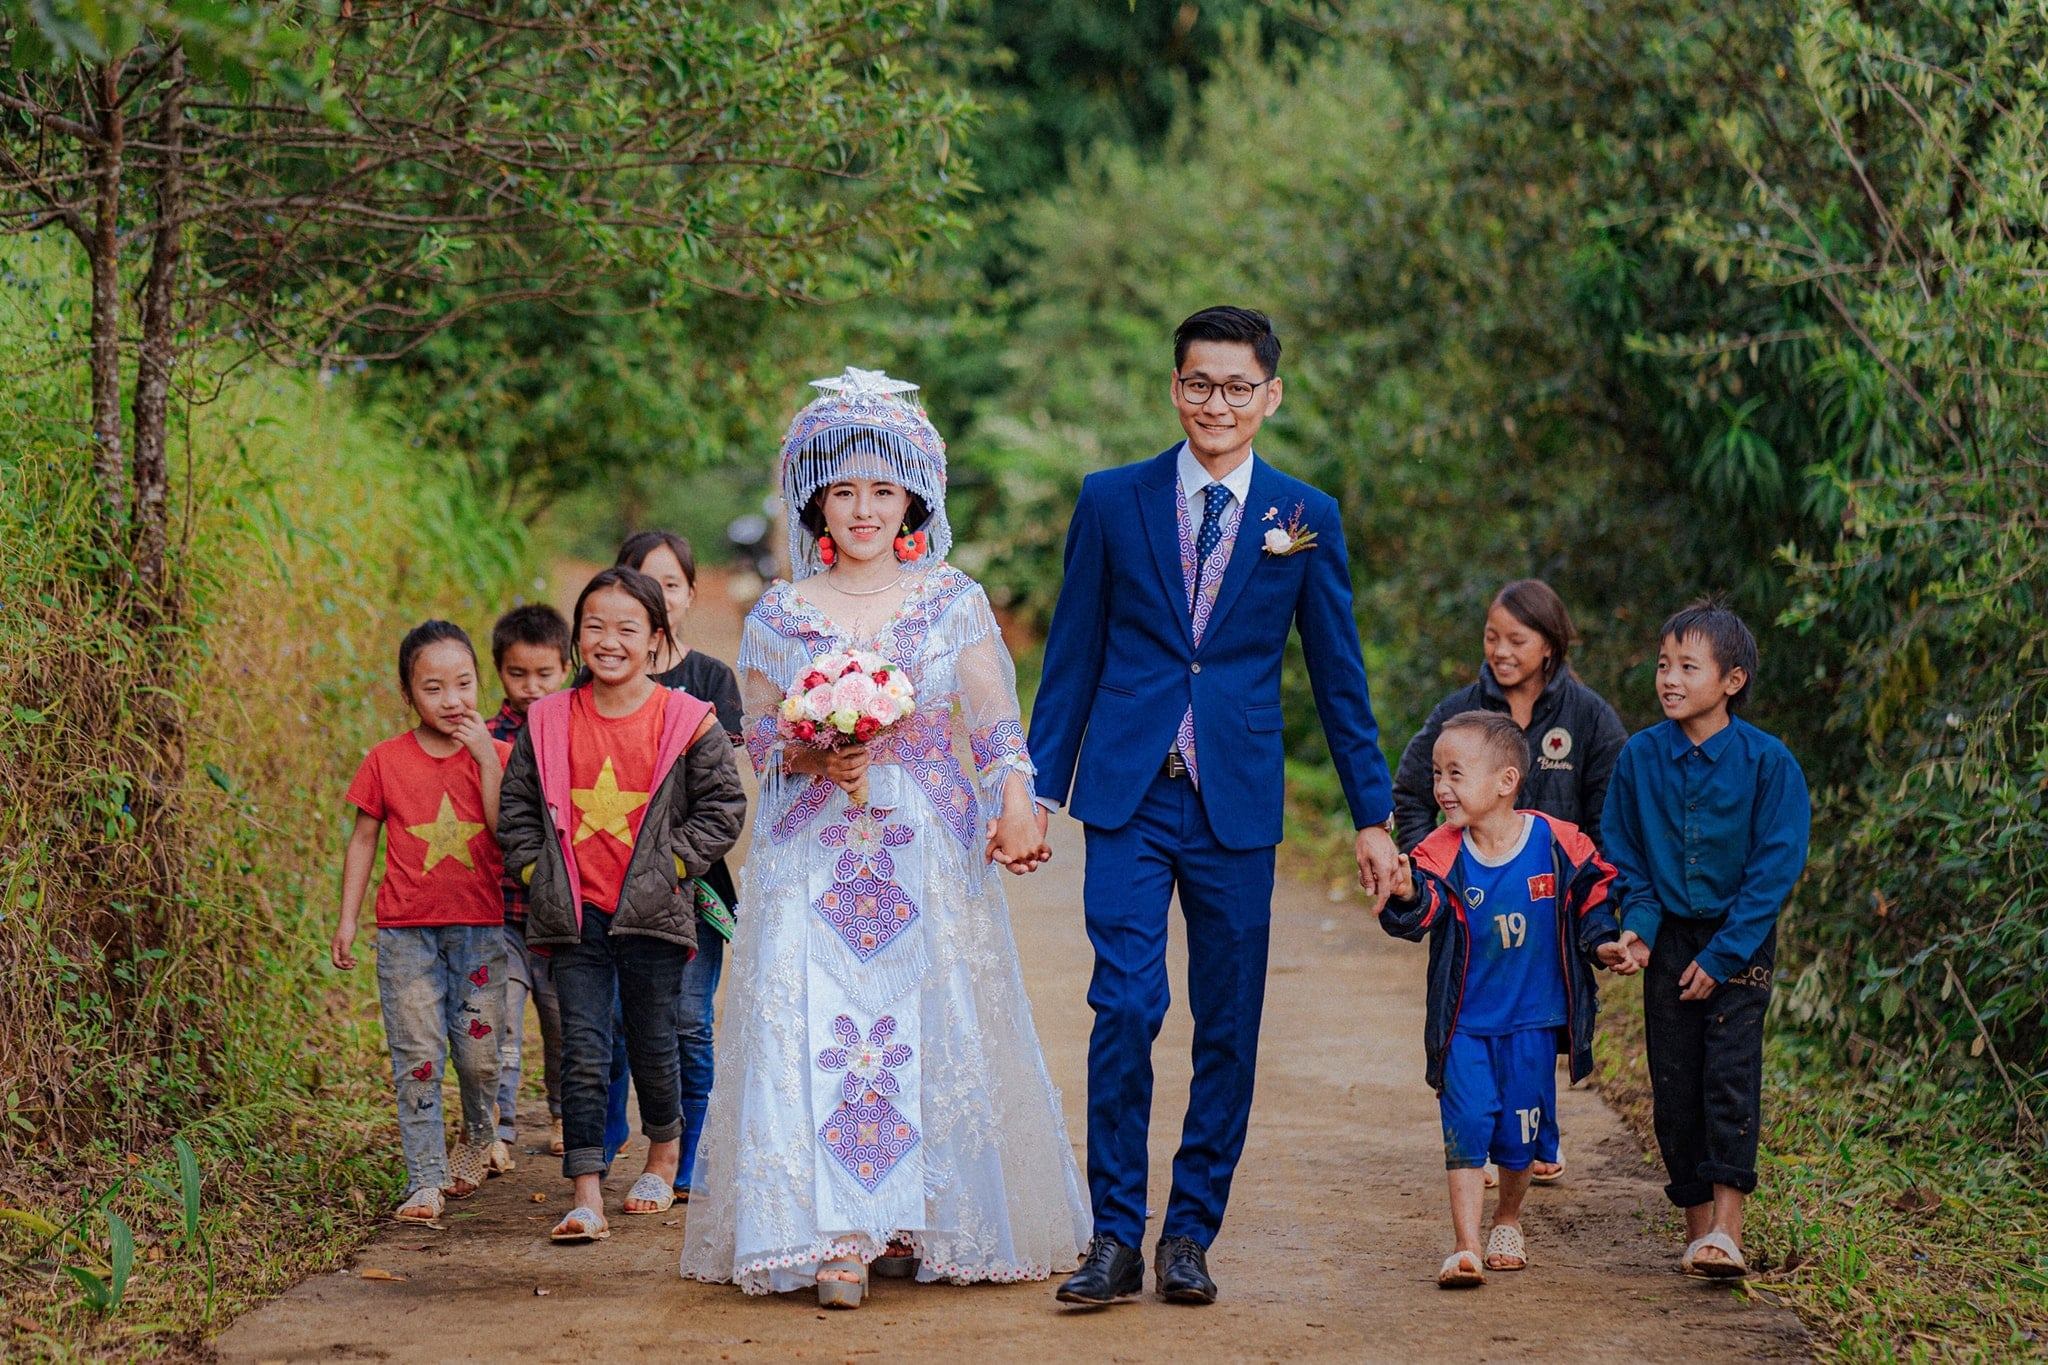 Đám cưới 'siêu lãng mạn' giữa mây trời Tây Bắc của cô dâu H'Mông và chú rể Sài thành